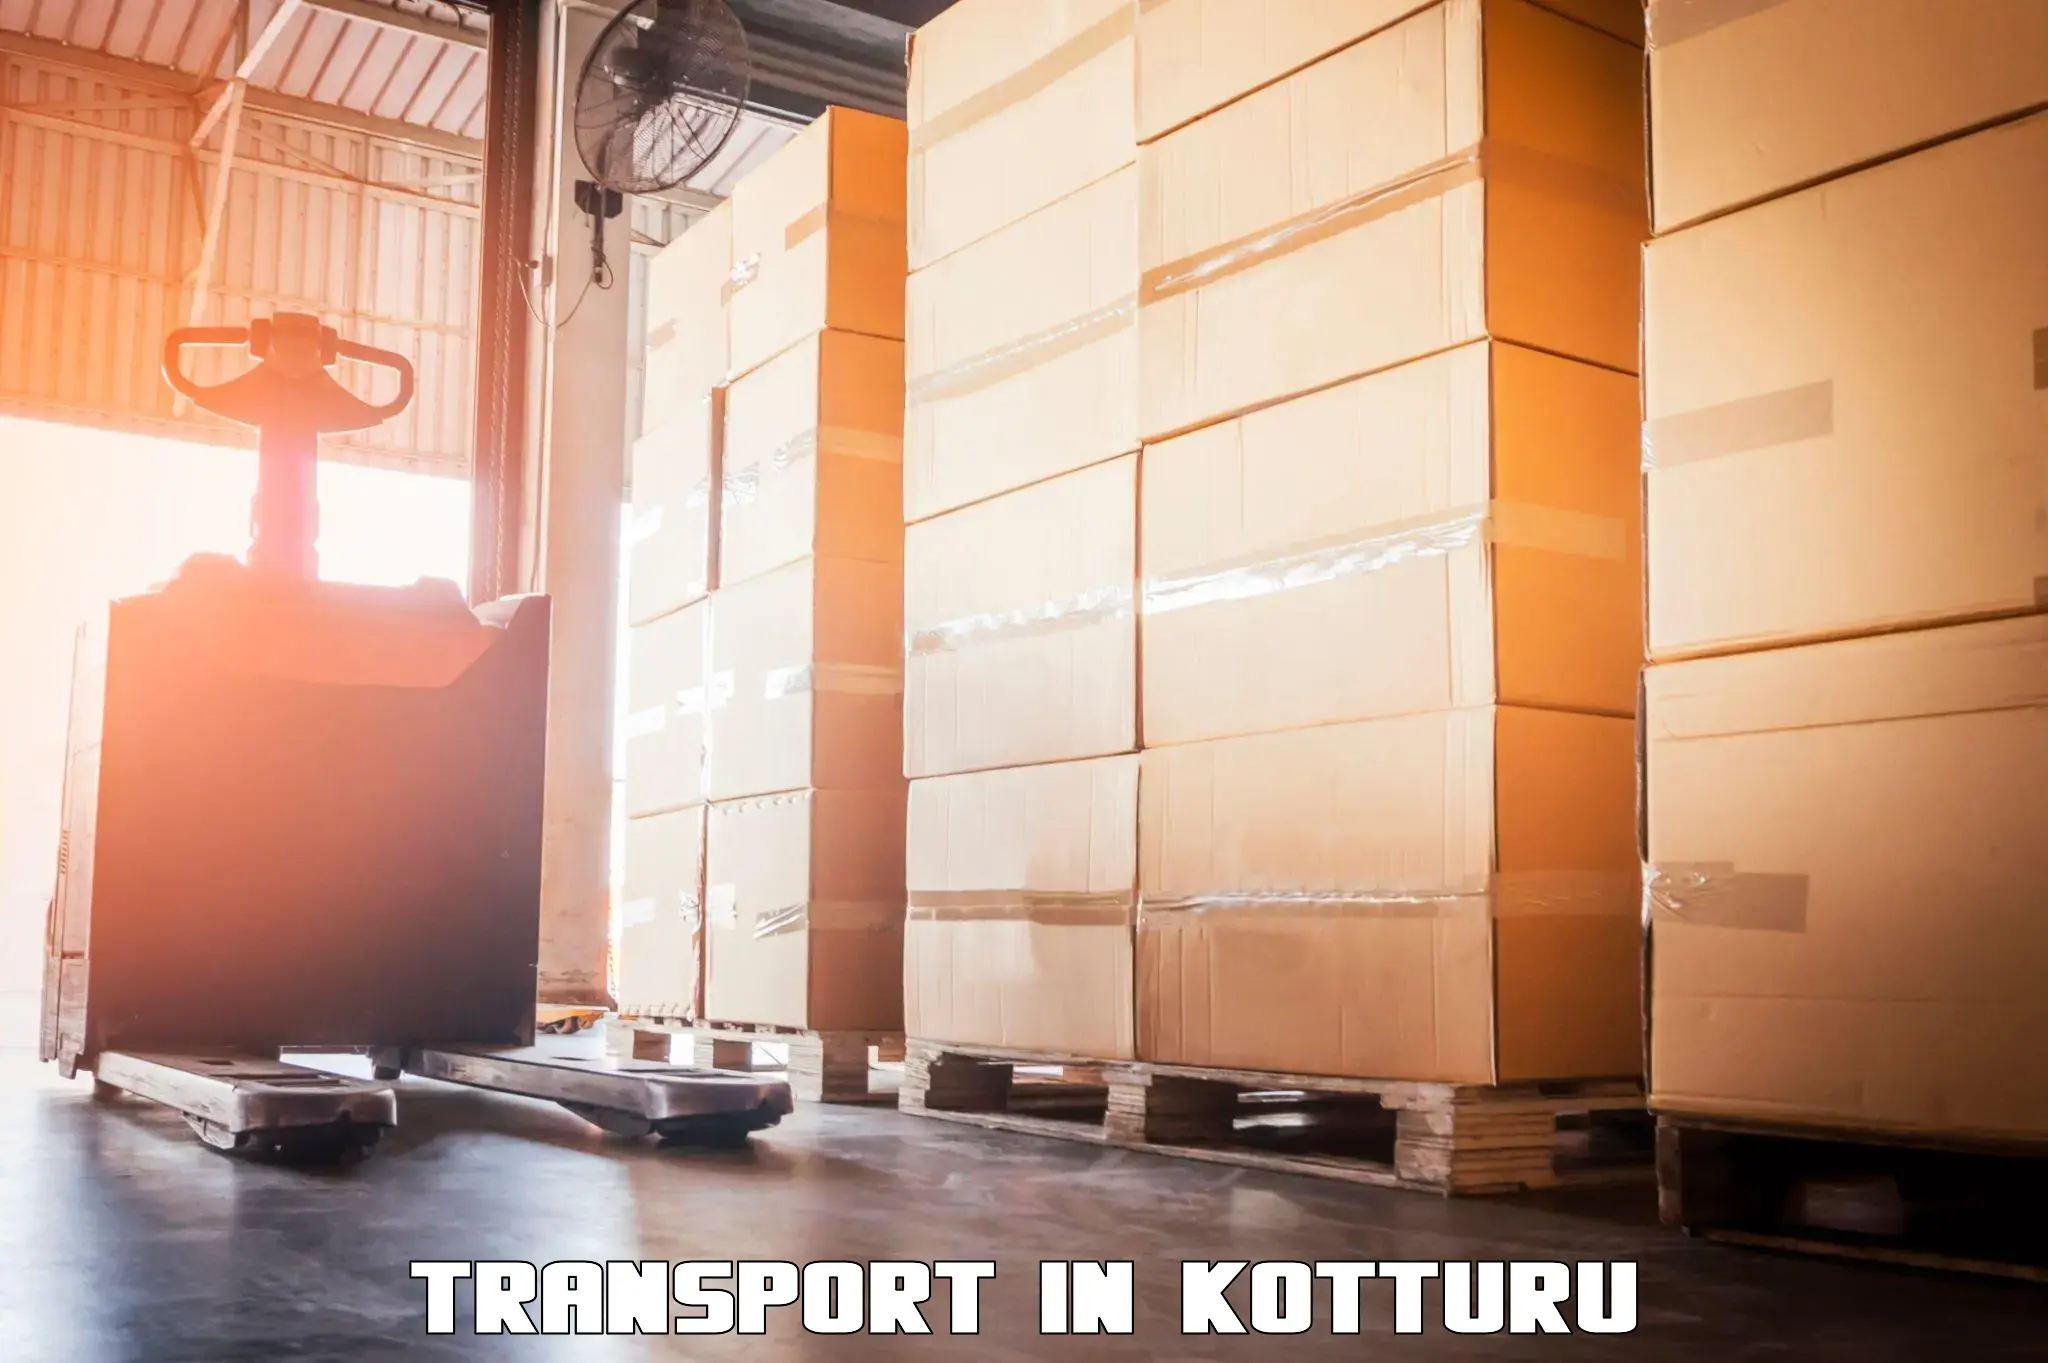 Transport in sharing in Kotturu